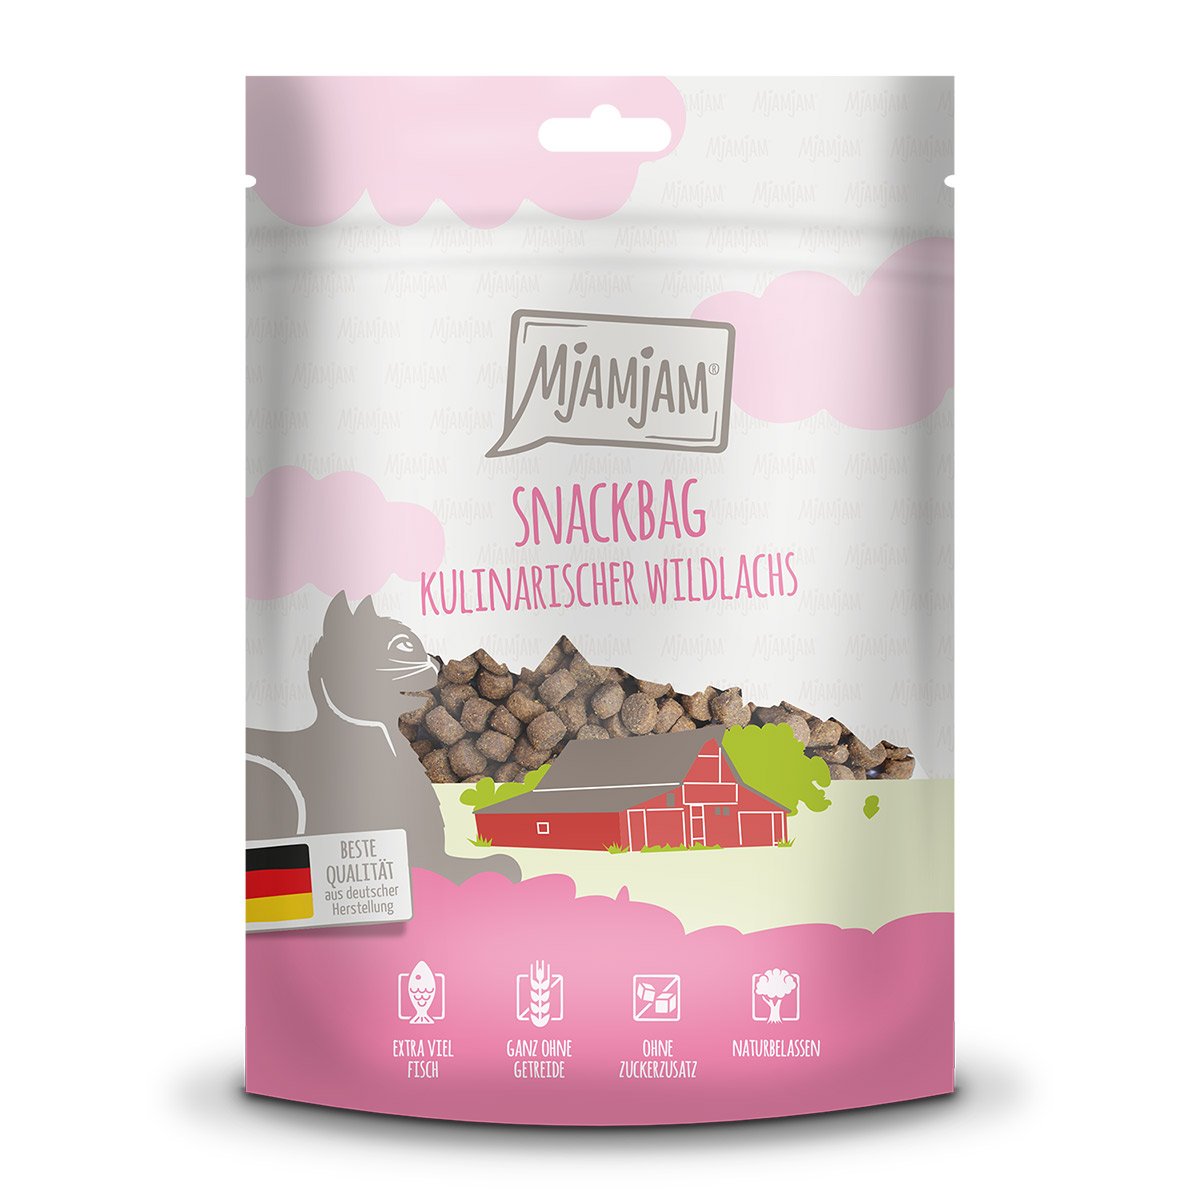 MjAMjAM - Snackbag – kulinarischer Wildlachs 125g